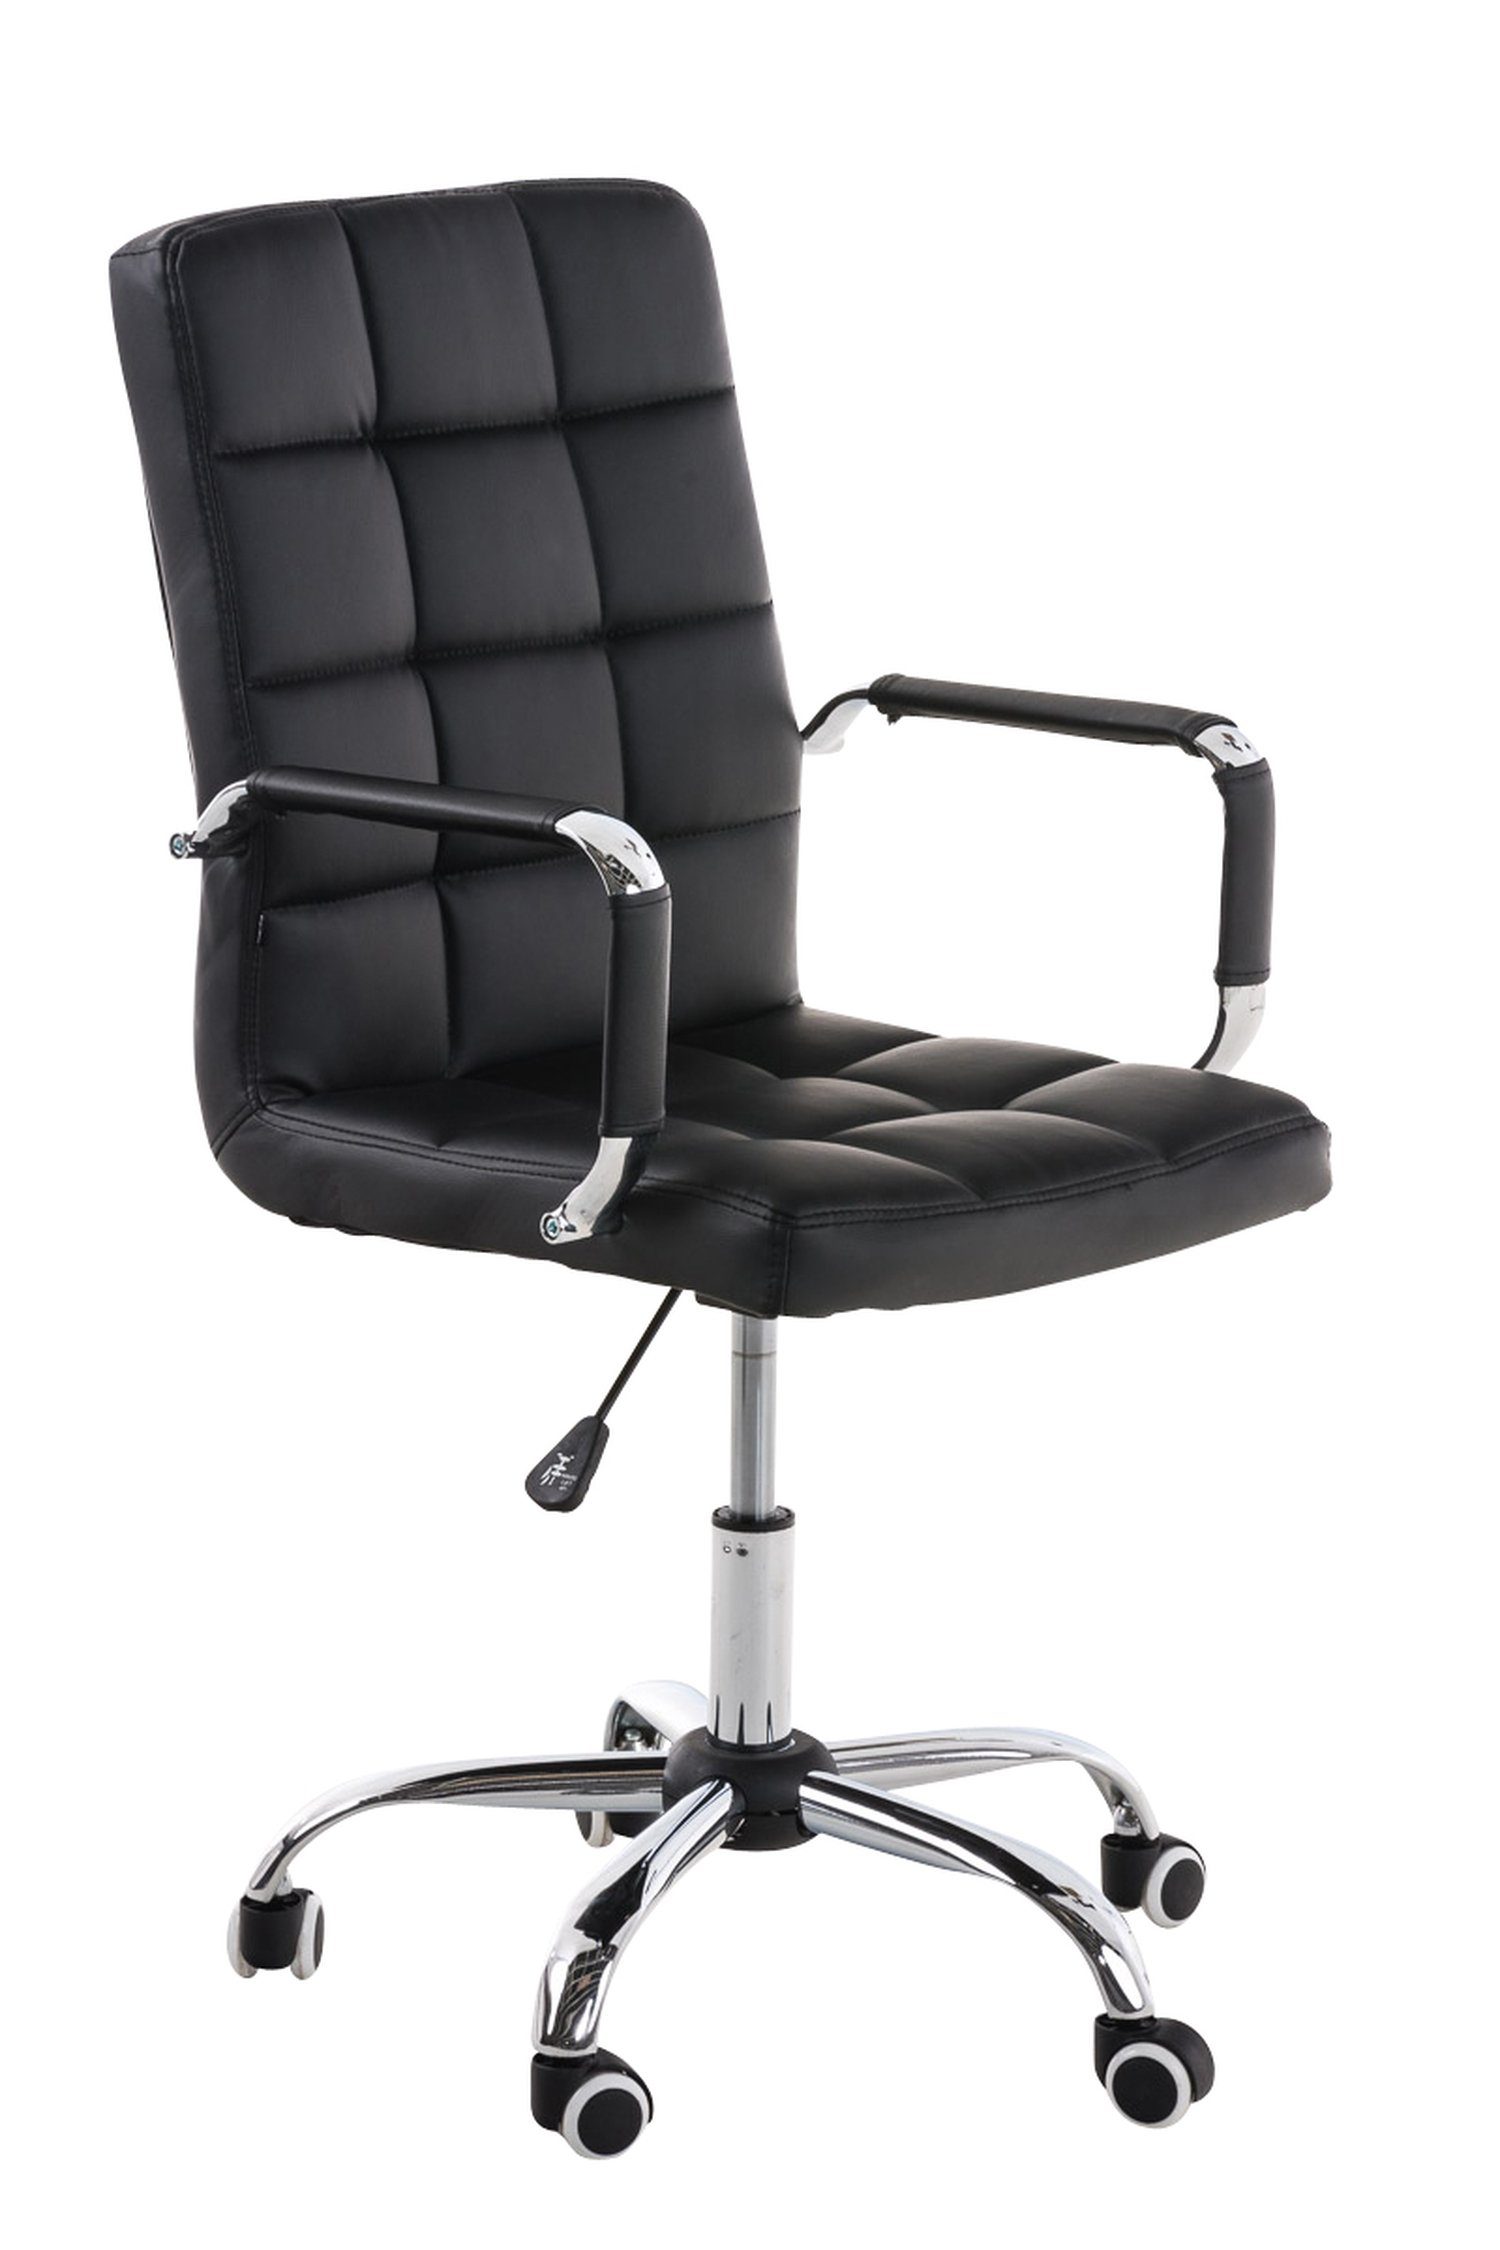 TPFLiving Bürostuhl Deal V2 mit bequemer Rückenlehne (Schreibtischstuhl, Drehstuhl, Konferenzstuhl, Chefsessel), Gestell: Metall chrom - Sitzfläche: Kunstleder schwarz